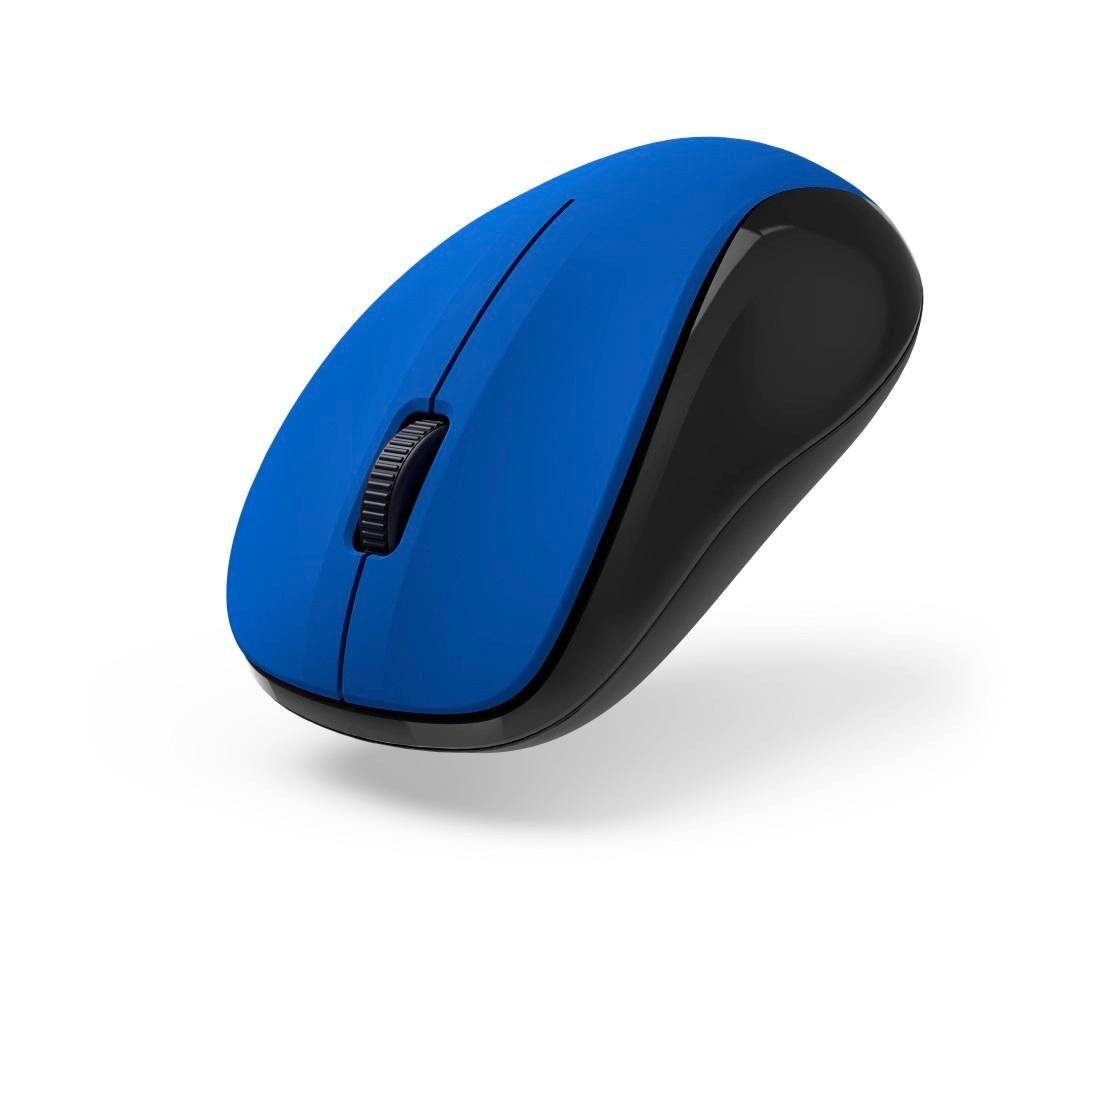 Hama Optische 3 Tasten Funkmaus blau "MW-300 V2", geräuschlos, Maus Empfänger USB